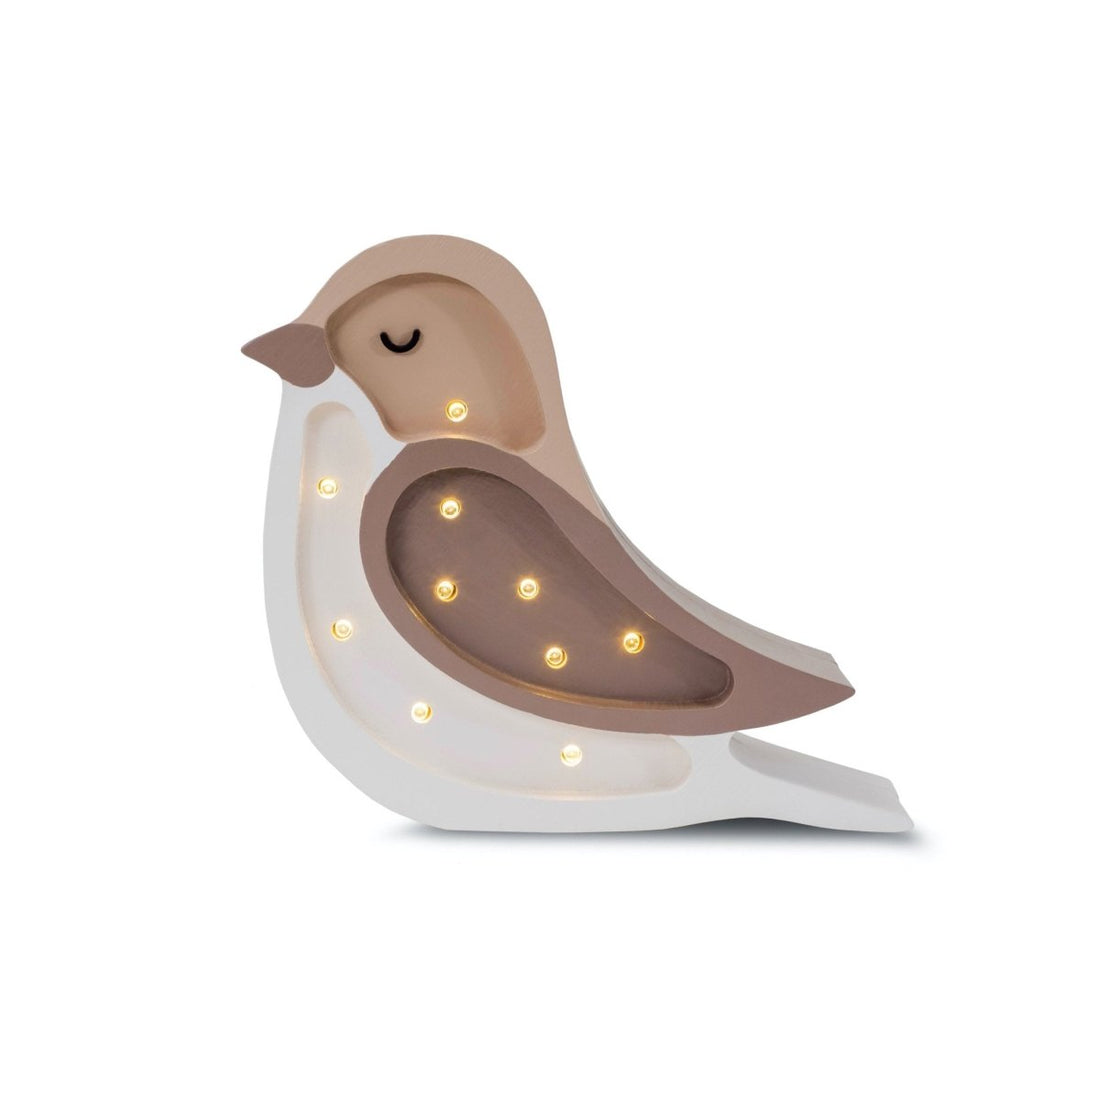 Mini Bird Lamp - Norman & Jules